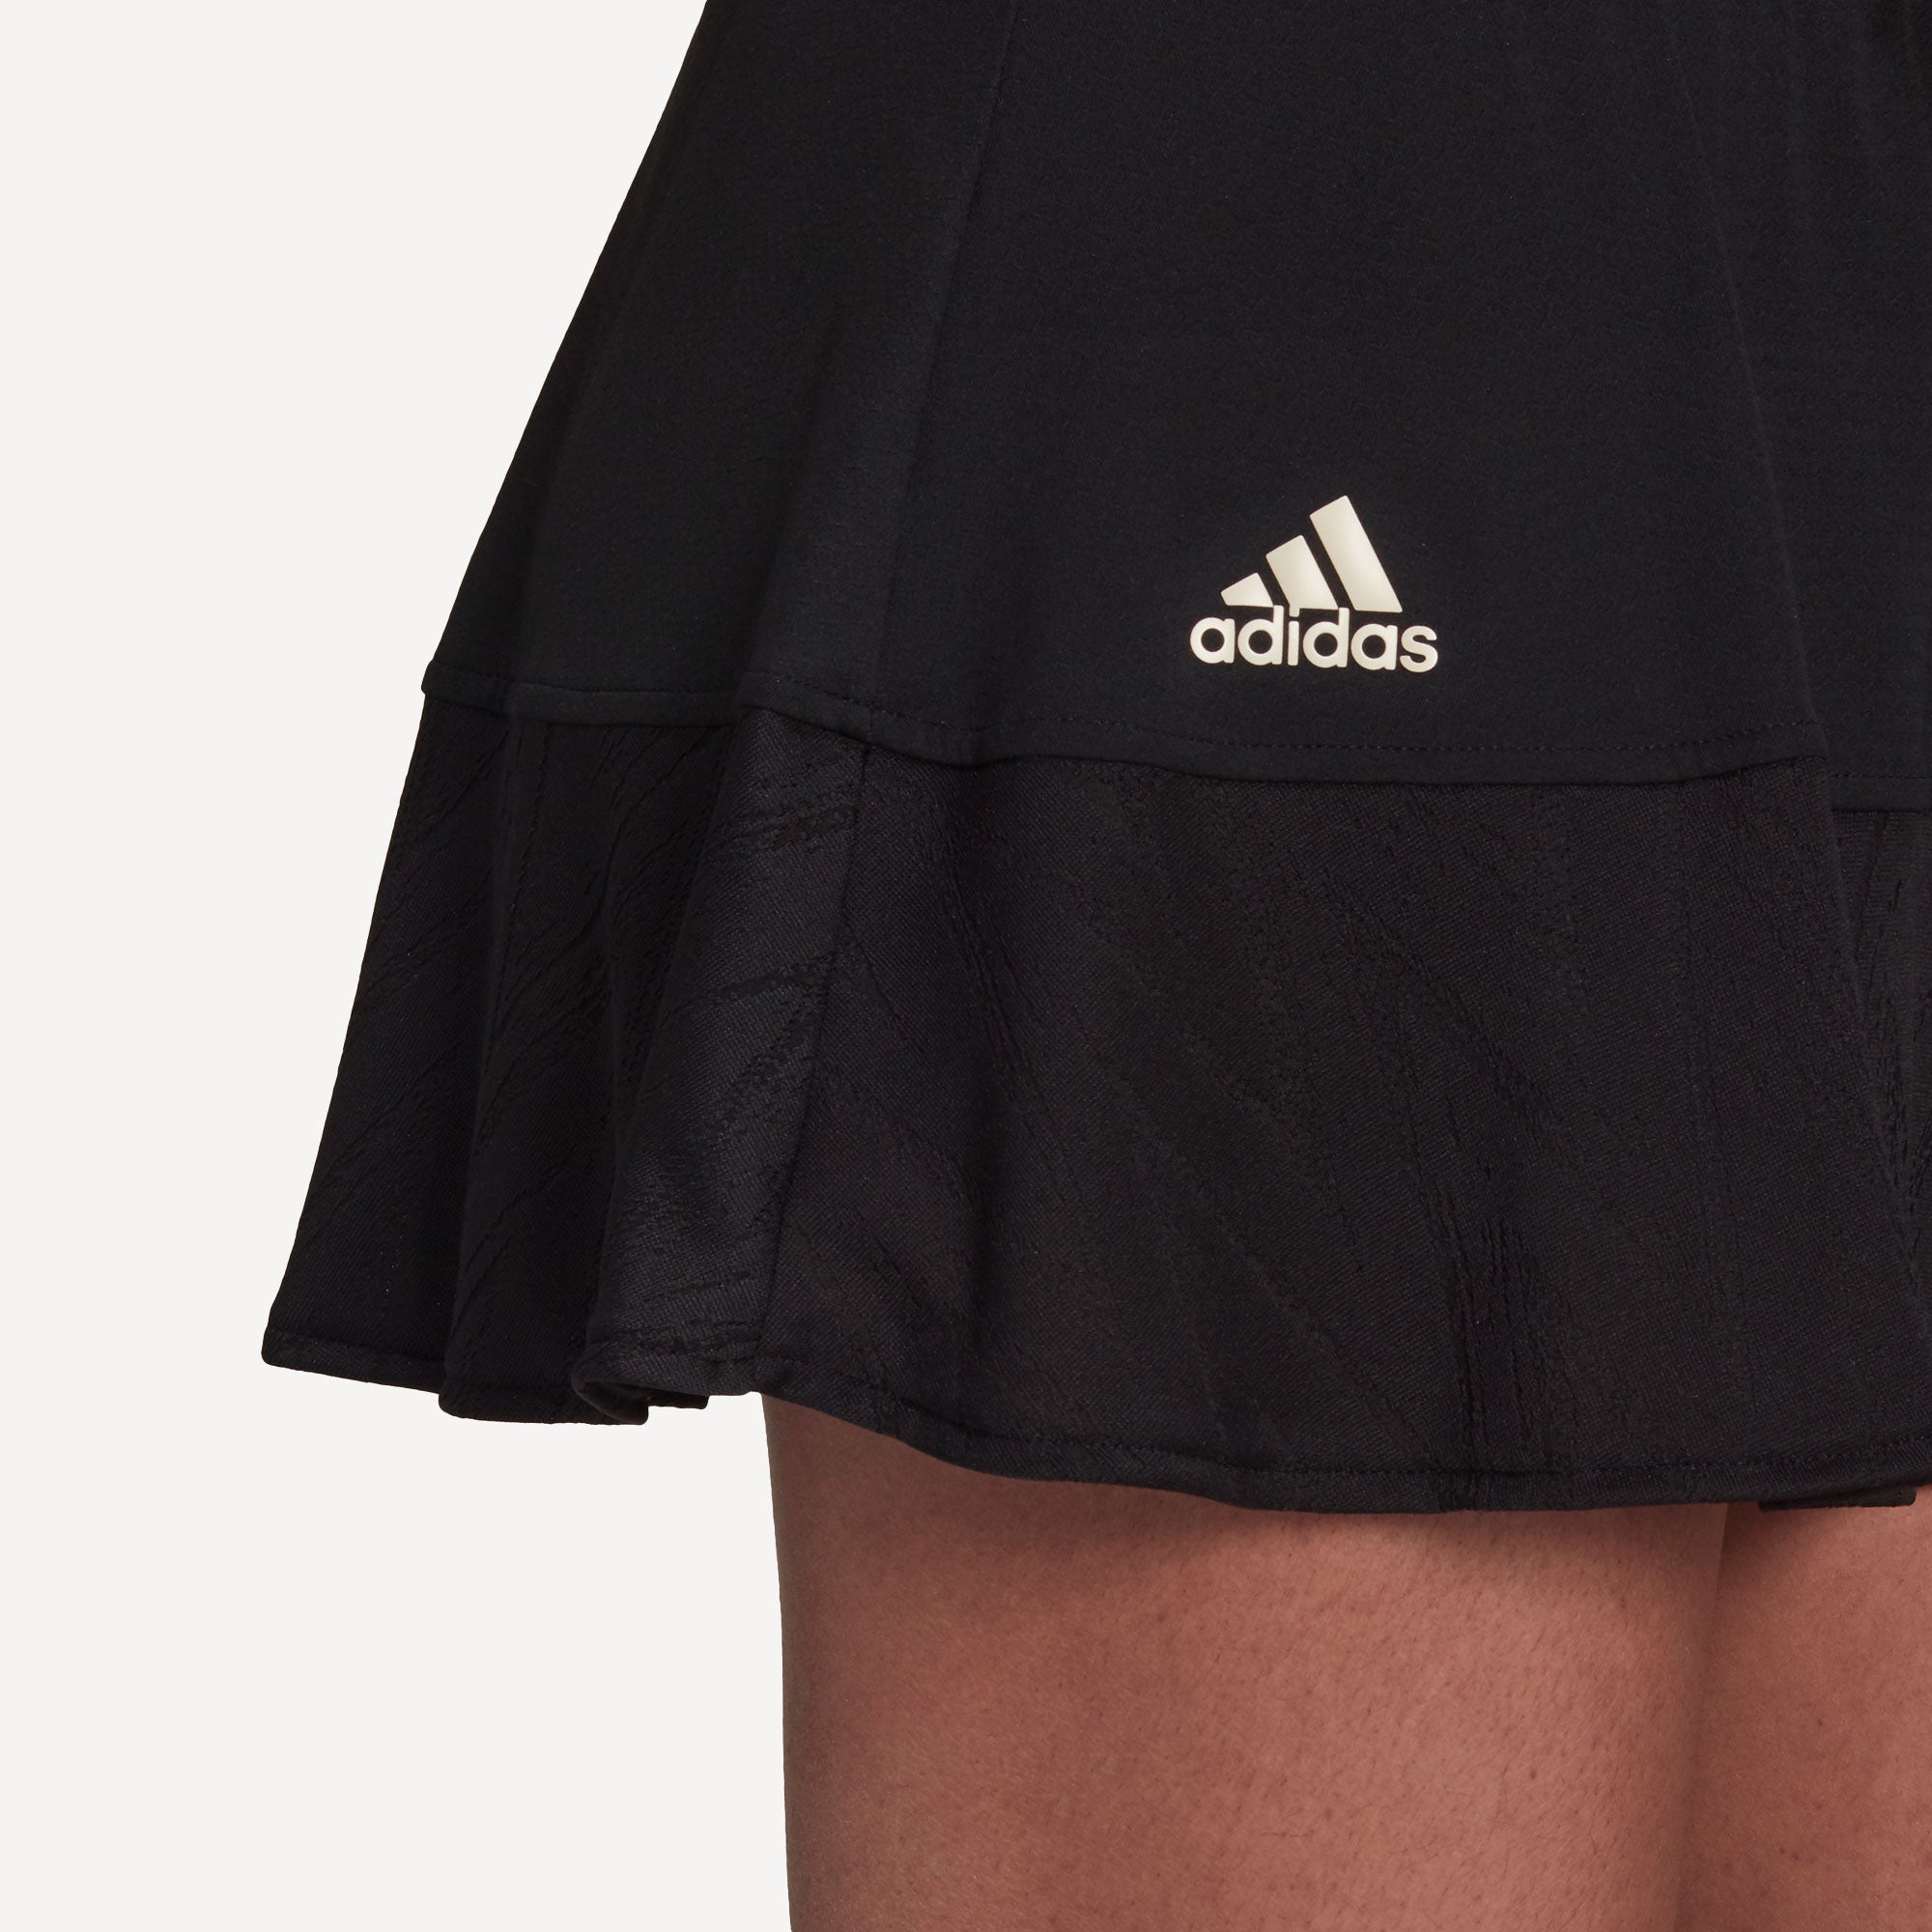 adidas Match Primeblue Women's Tennis Skirt